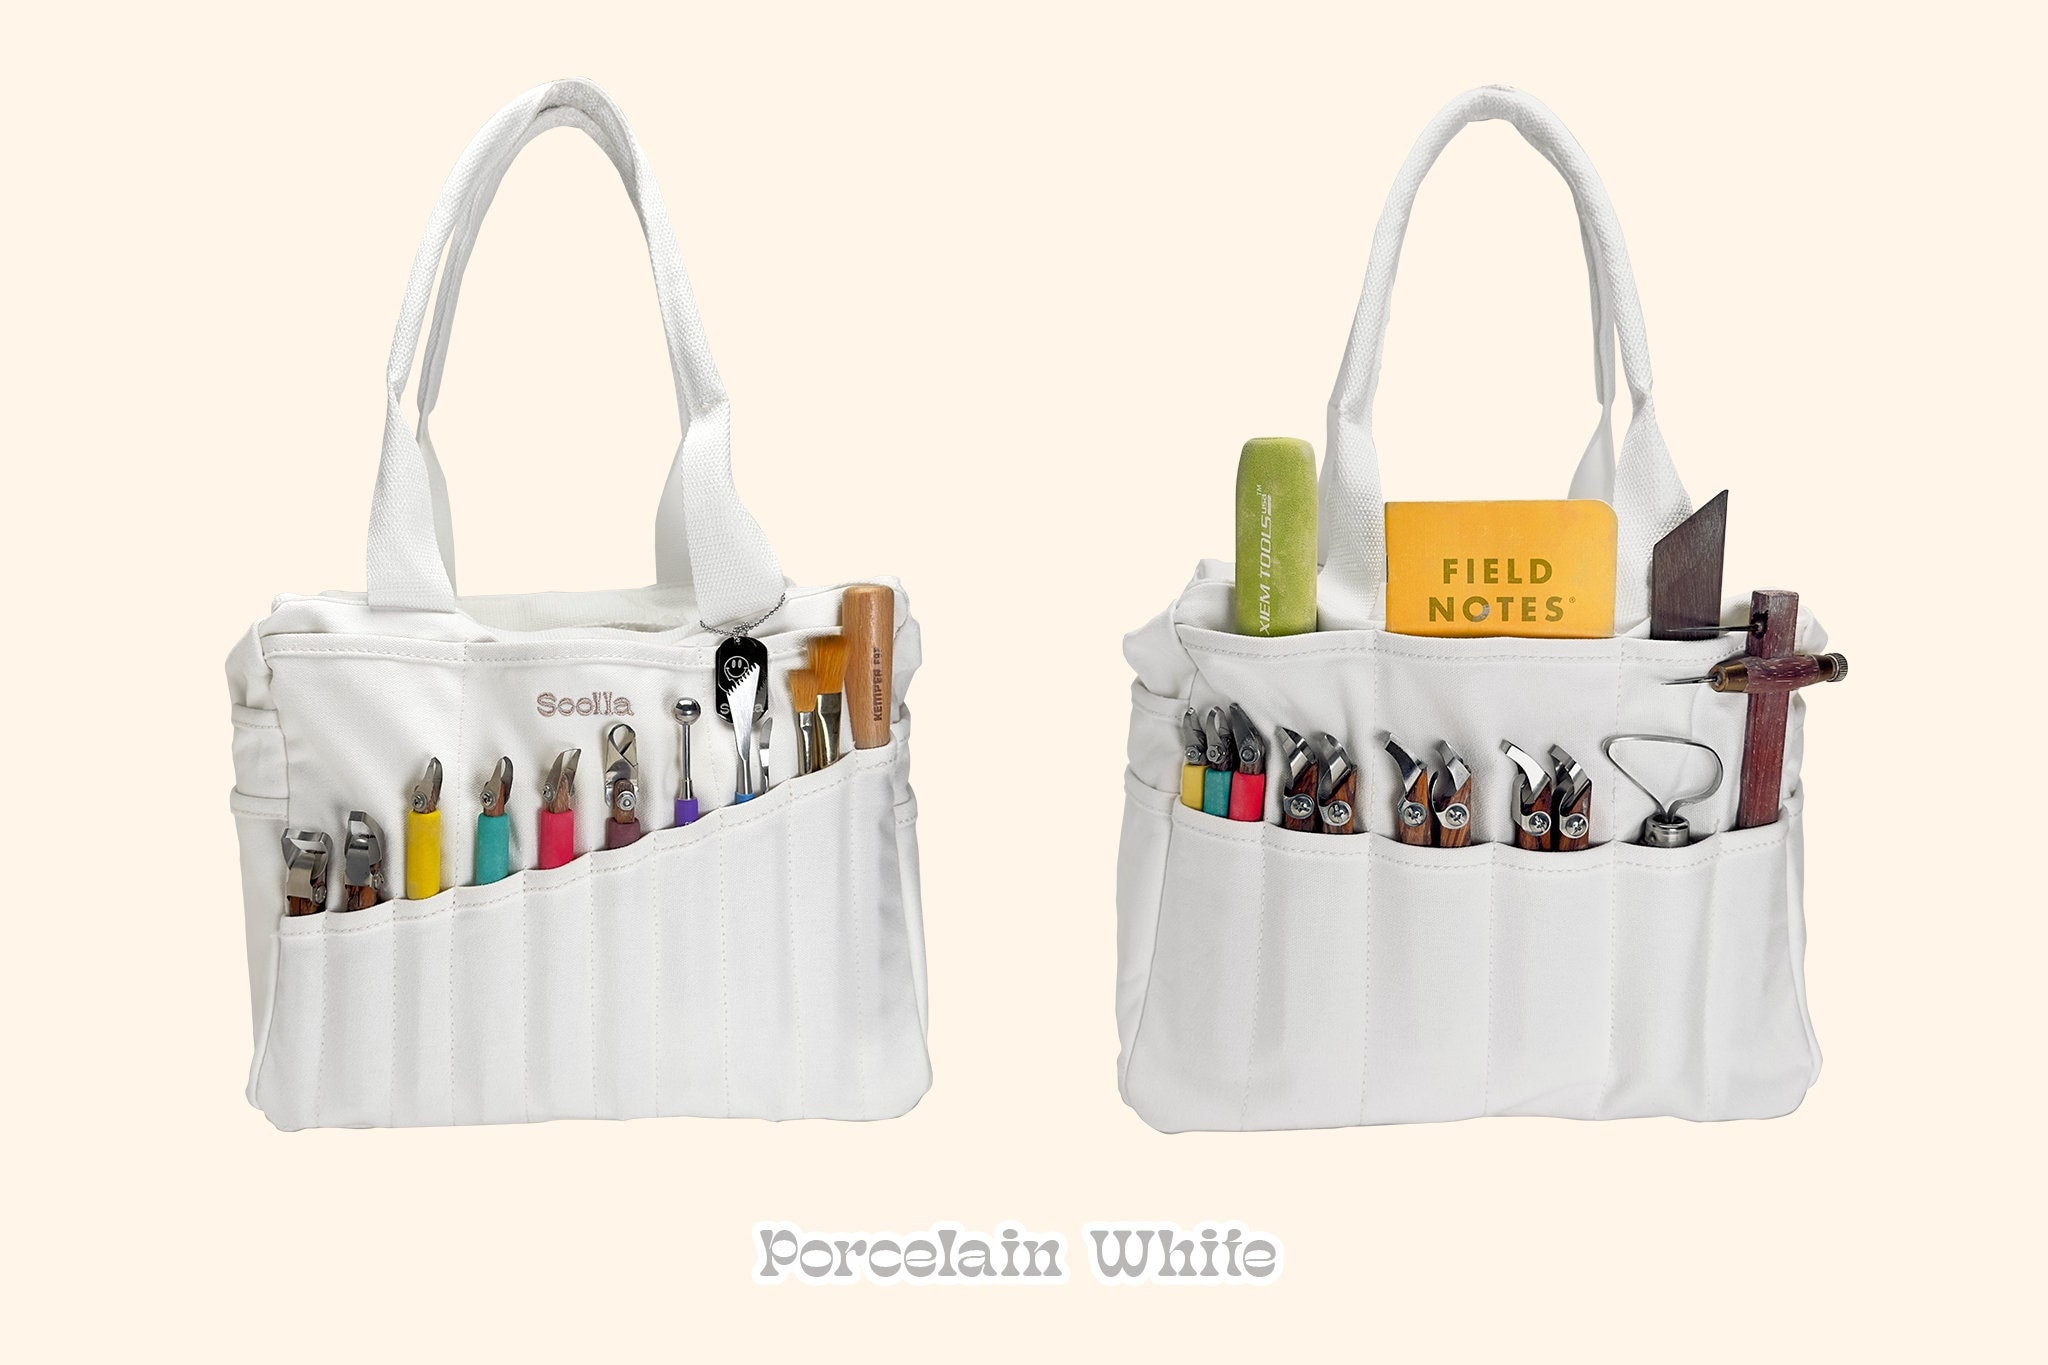 Lady Bag White Transparent, Dark Lady Bag Illustration, Bag, Ladies Bag,  Dark Bag PNG Image For Free Download